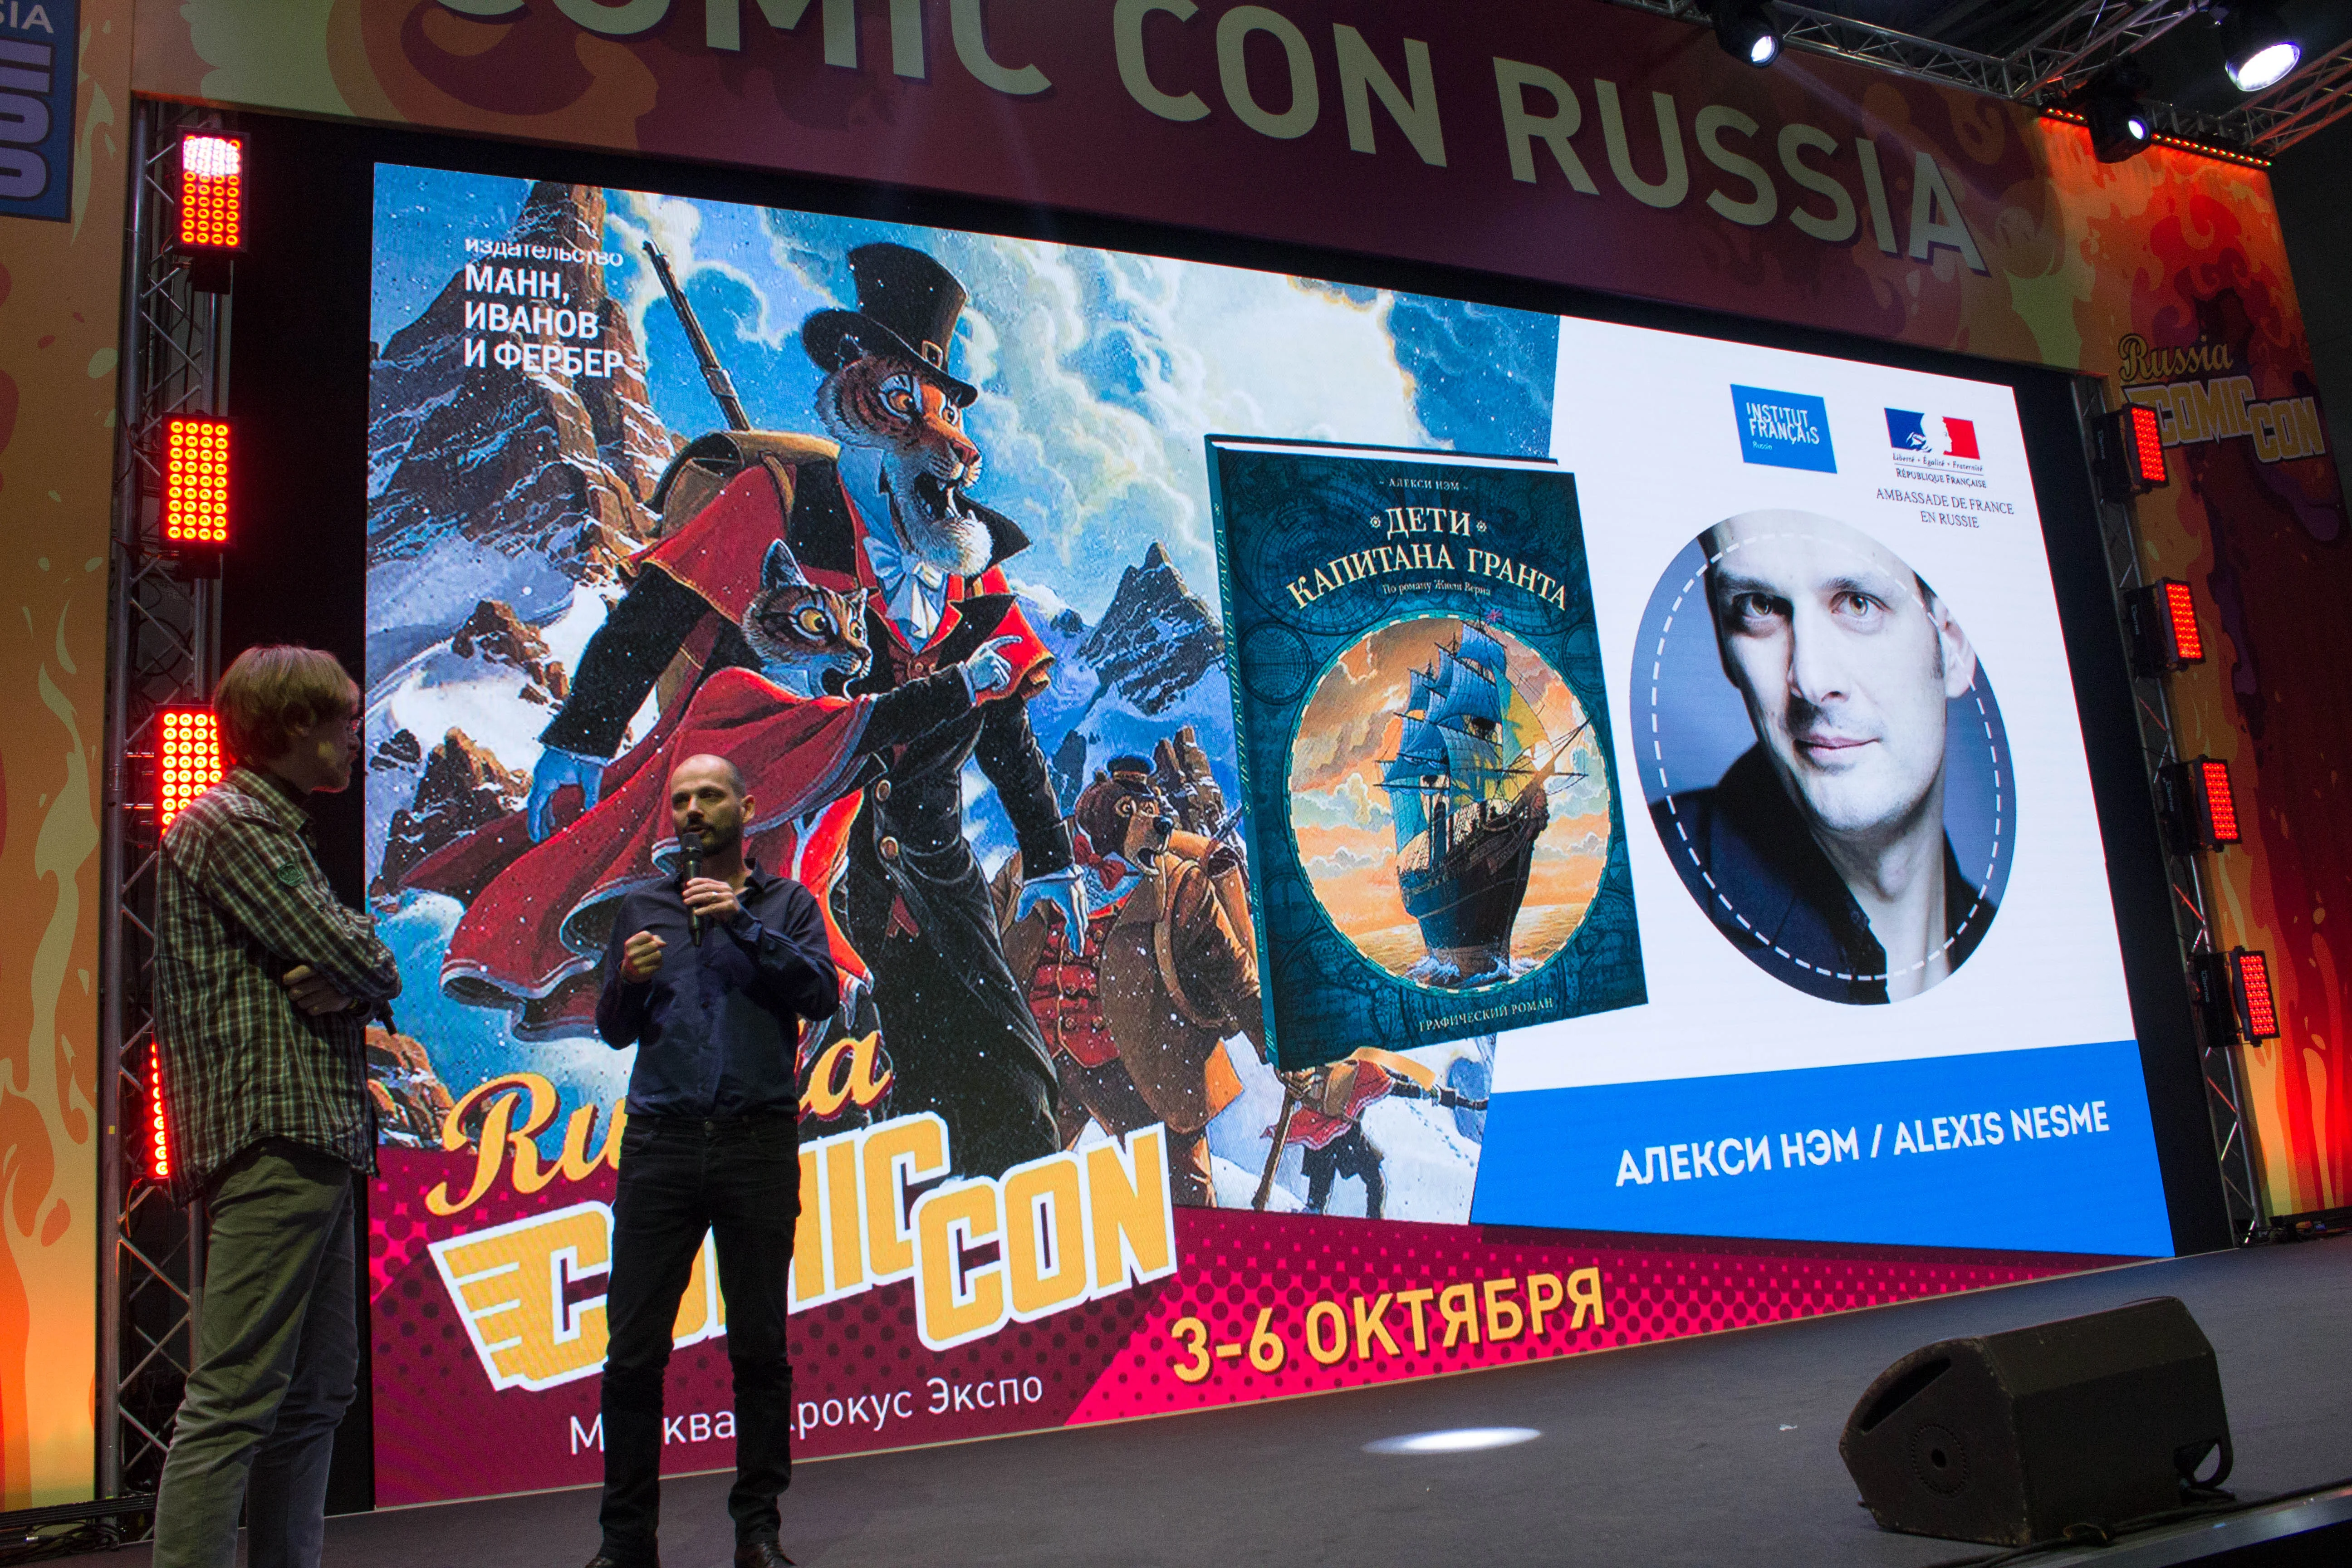 Миккельсен с Кодзимой, Эндрю Скотт, клип Lumen по Бэтмену. Comic Con Russia и «Игромир» 2019. День 3 - фото 14